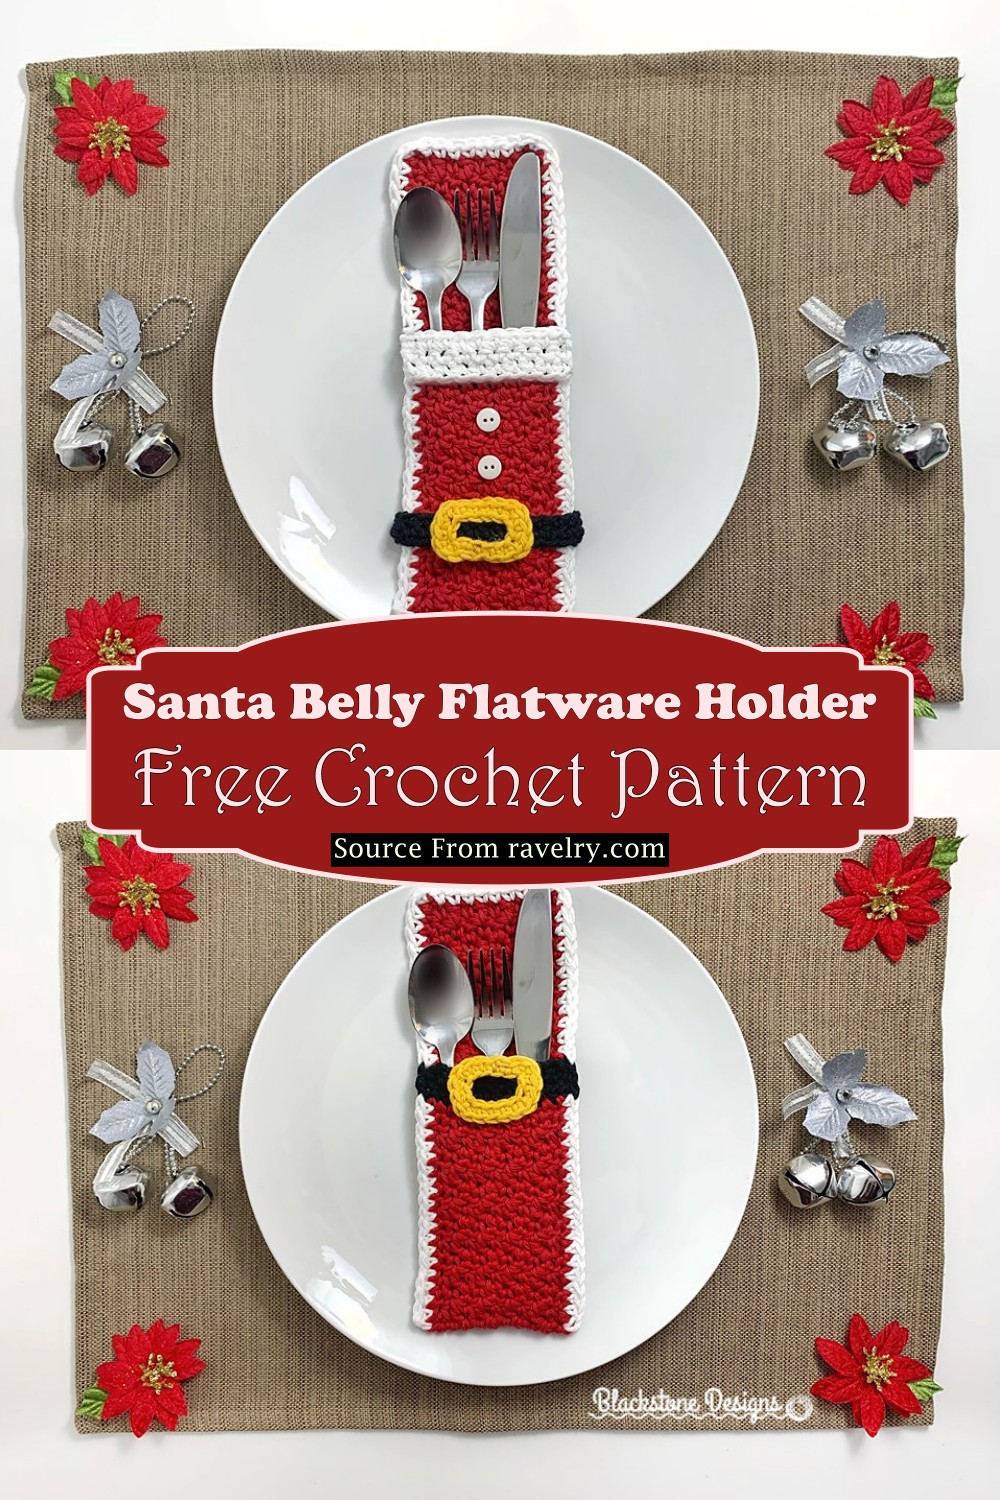 Santa Belly Flatware Holder